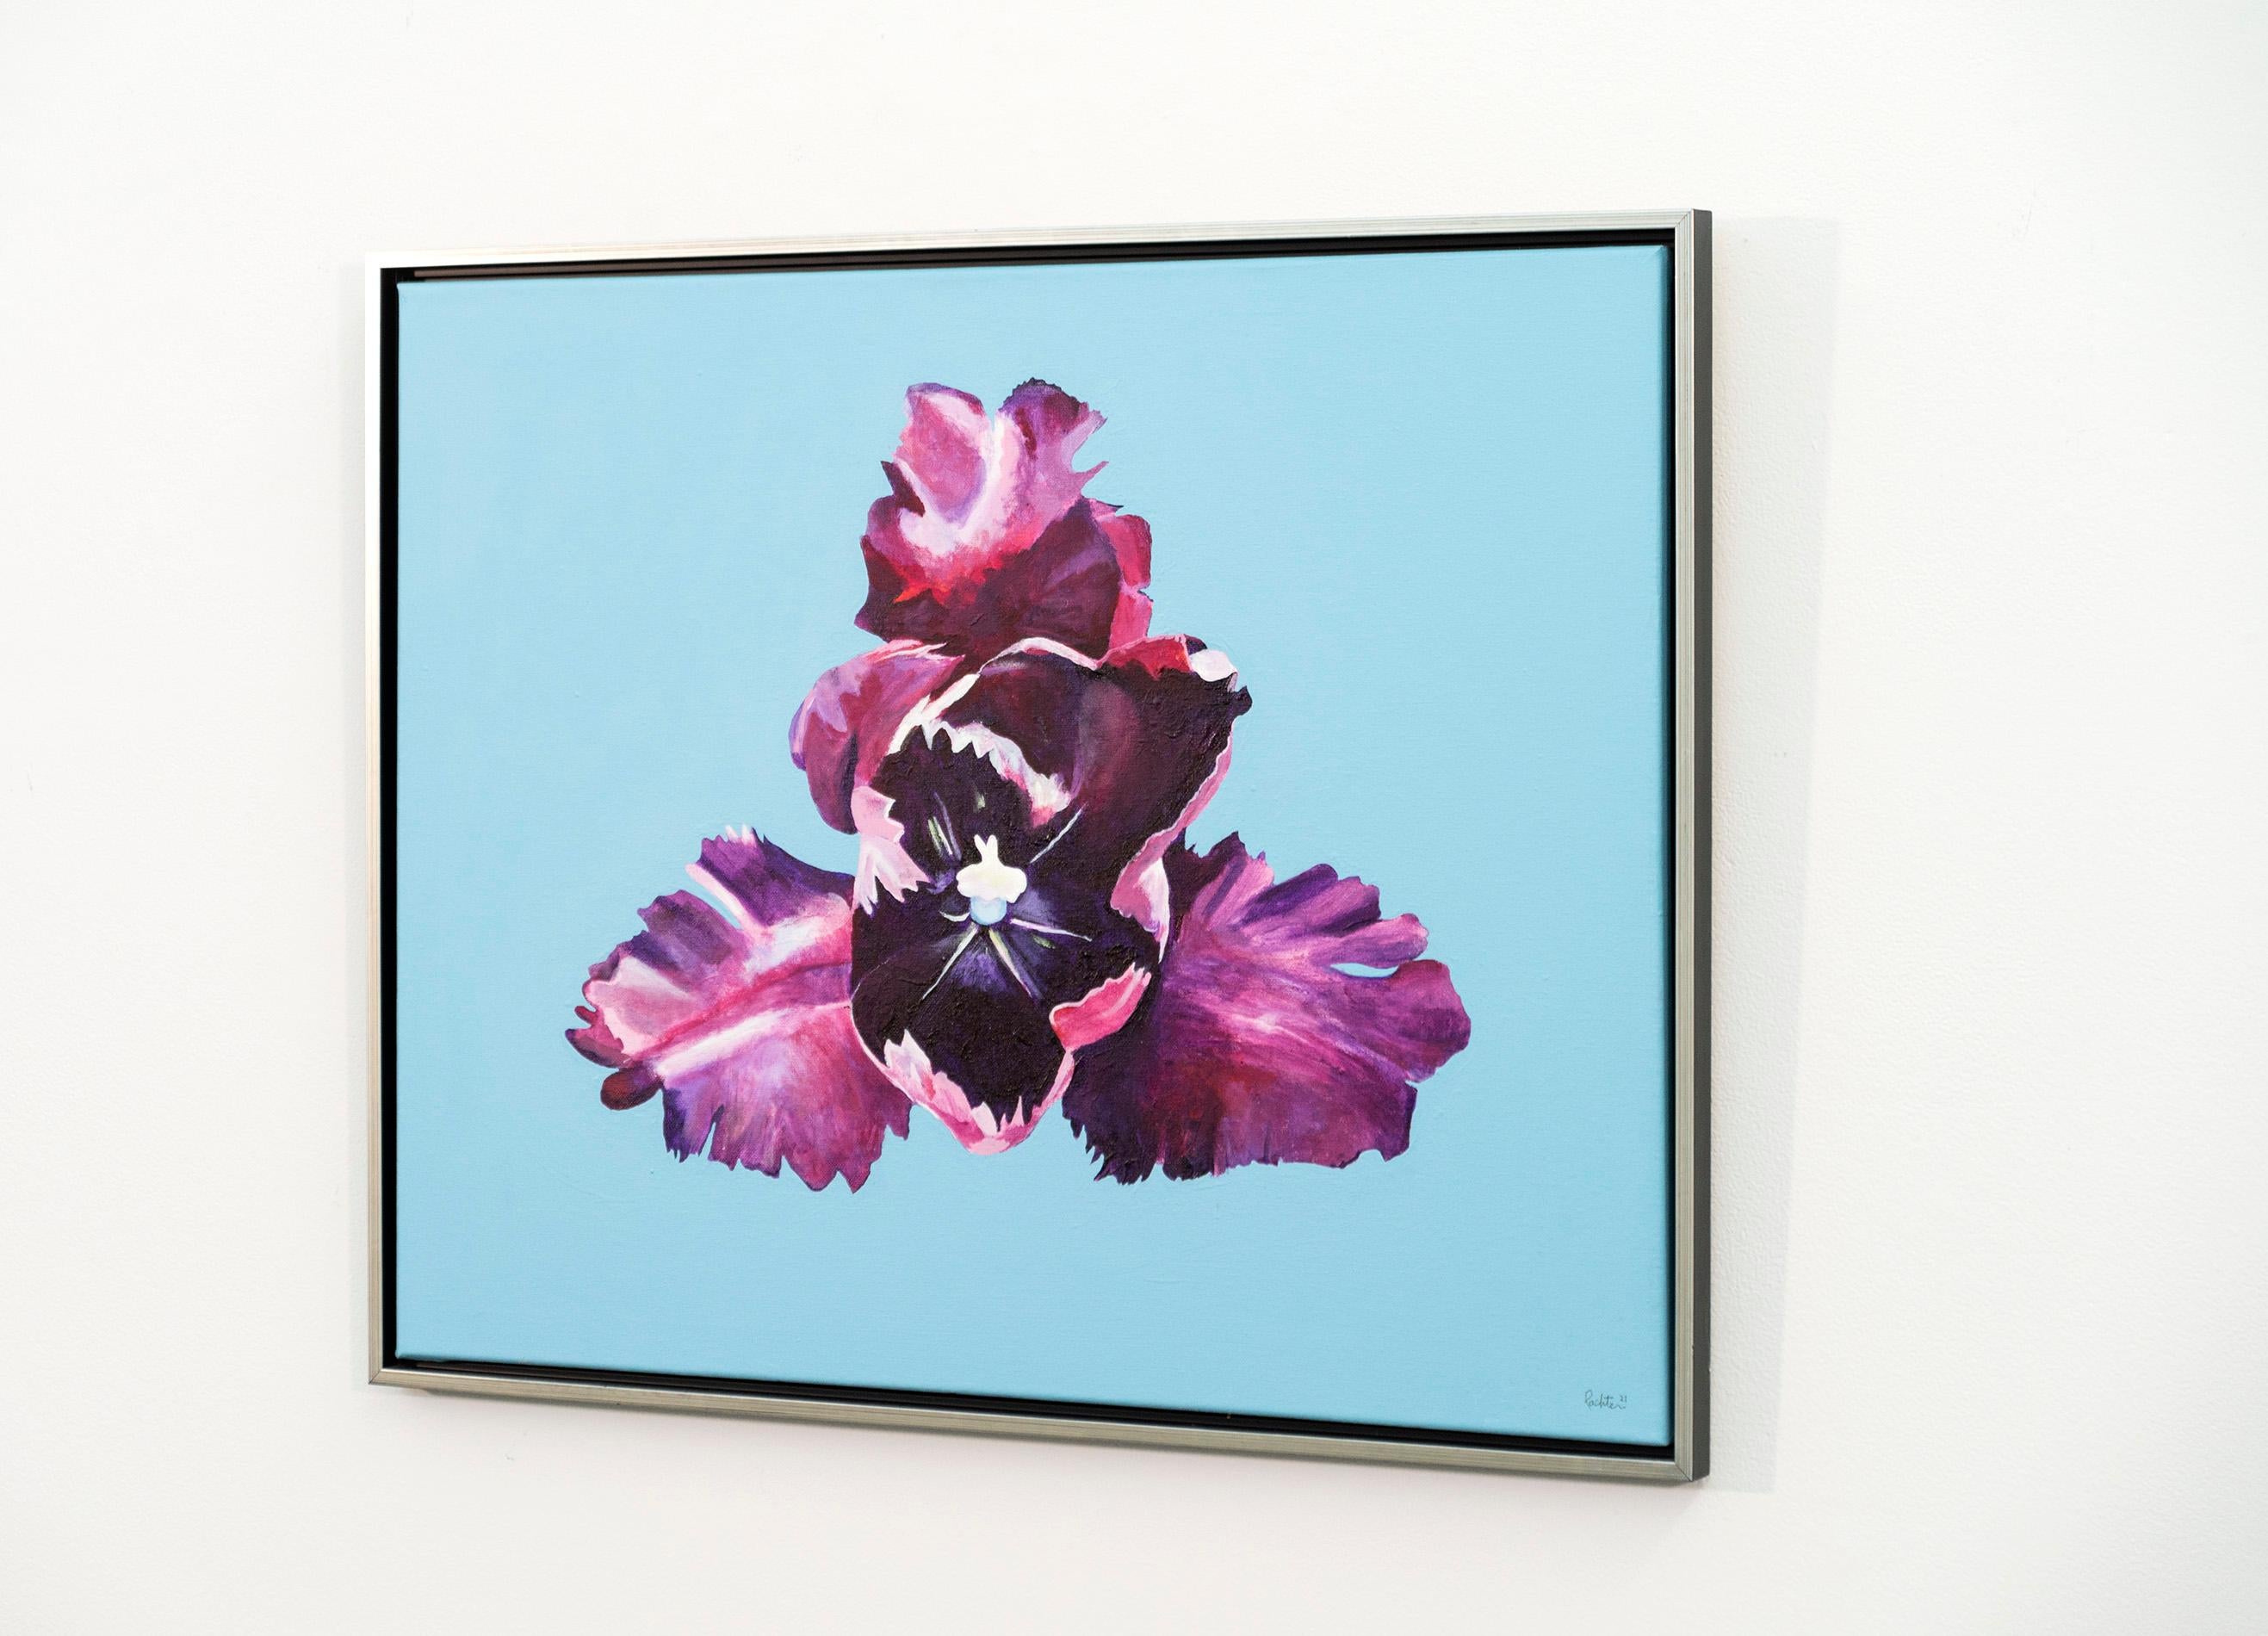 Iris - Blumen, Pop-Art, Frühling, zeitgenössisch, Acryl auf Leinwand – Painting von Charles Pachter